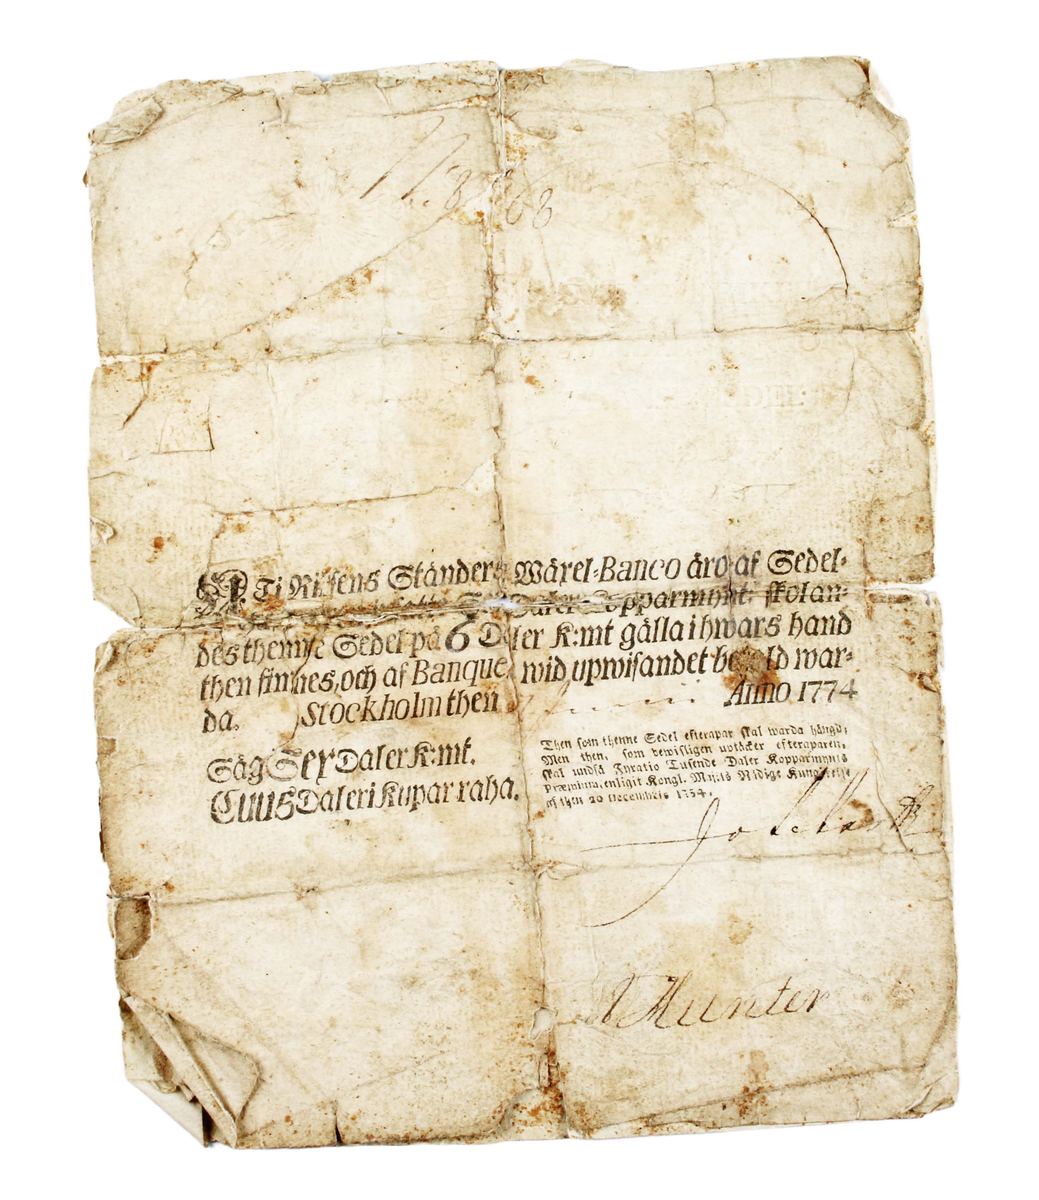 Sedel i form av 2 limmade pappersark. I mitten tryckt text: "Uti rikens ständer märel-Banco äro af Sedel.............Stockholm then......Anno 1774".
Längst ned till höger namnsignatur.